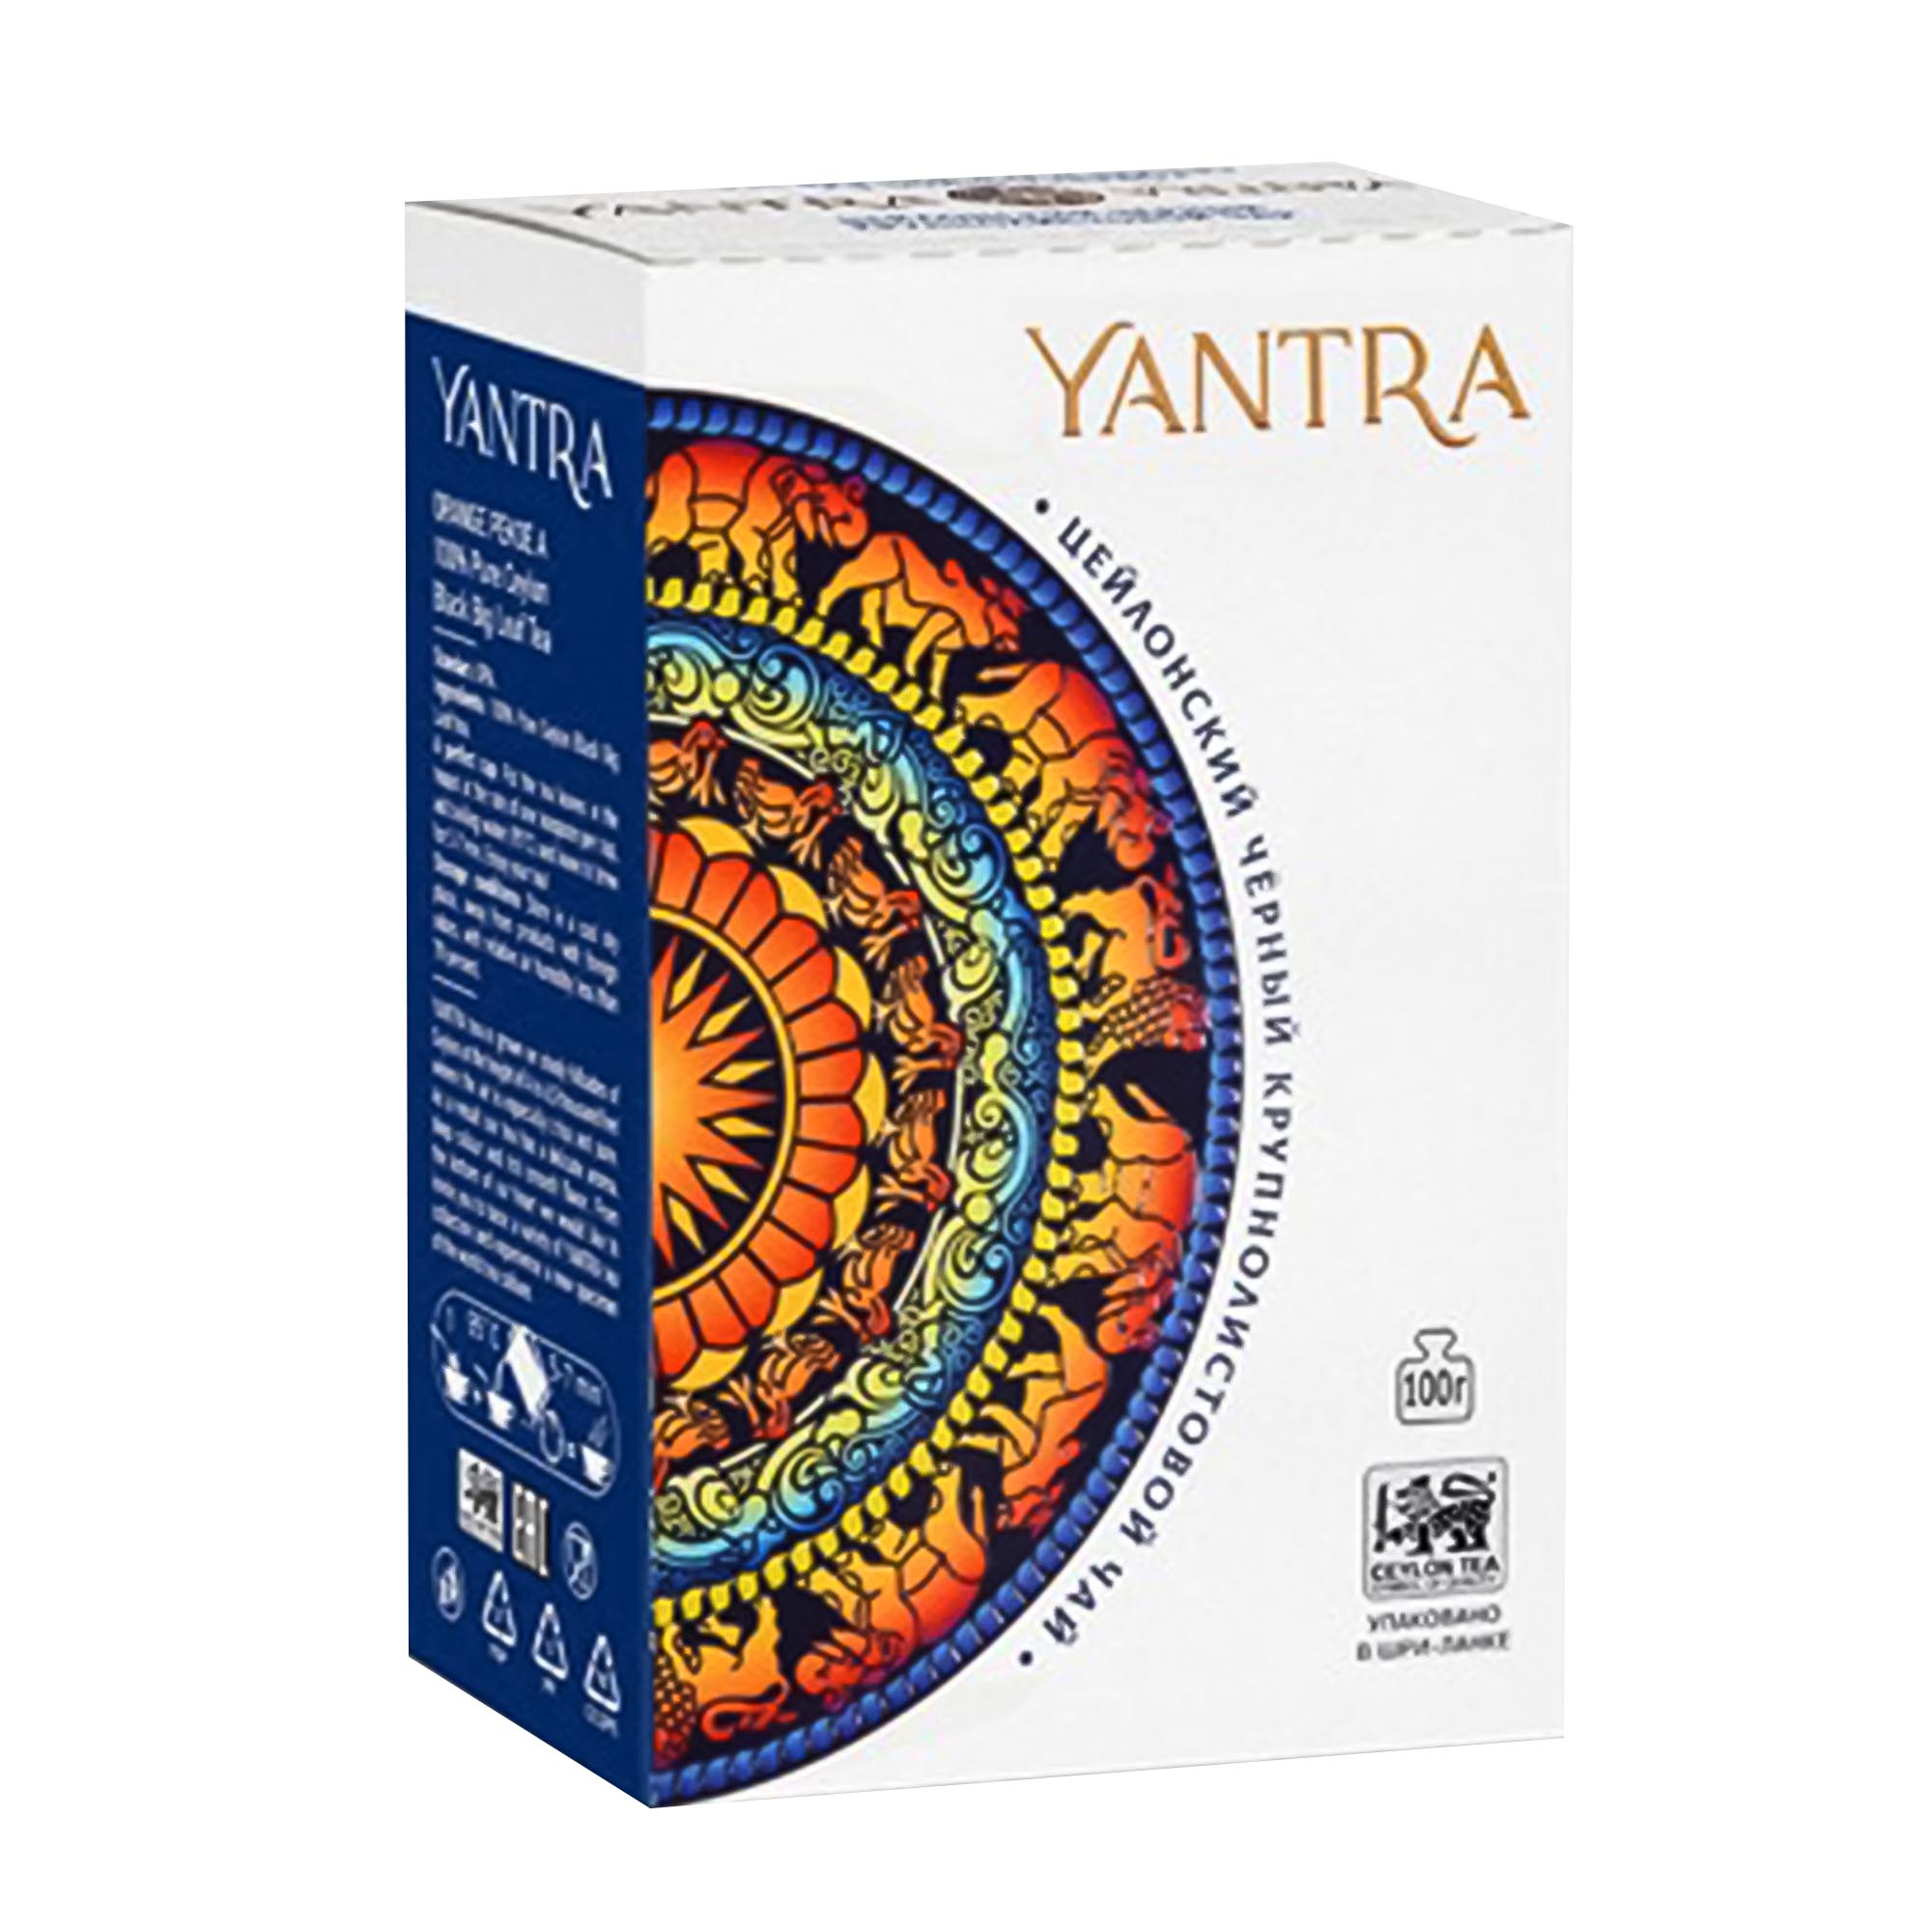 Чай черный крупнолистовой Yantra ОРА 500 г чай среднелистовой yantra flowery broken orange pekoe 100 г